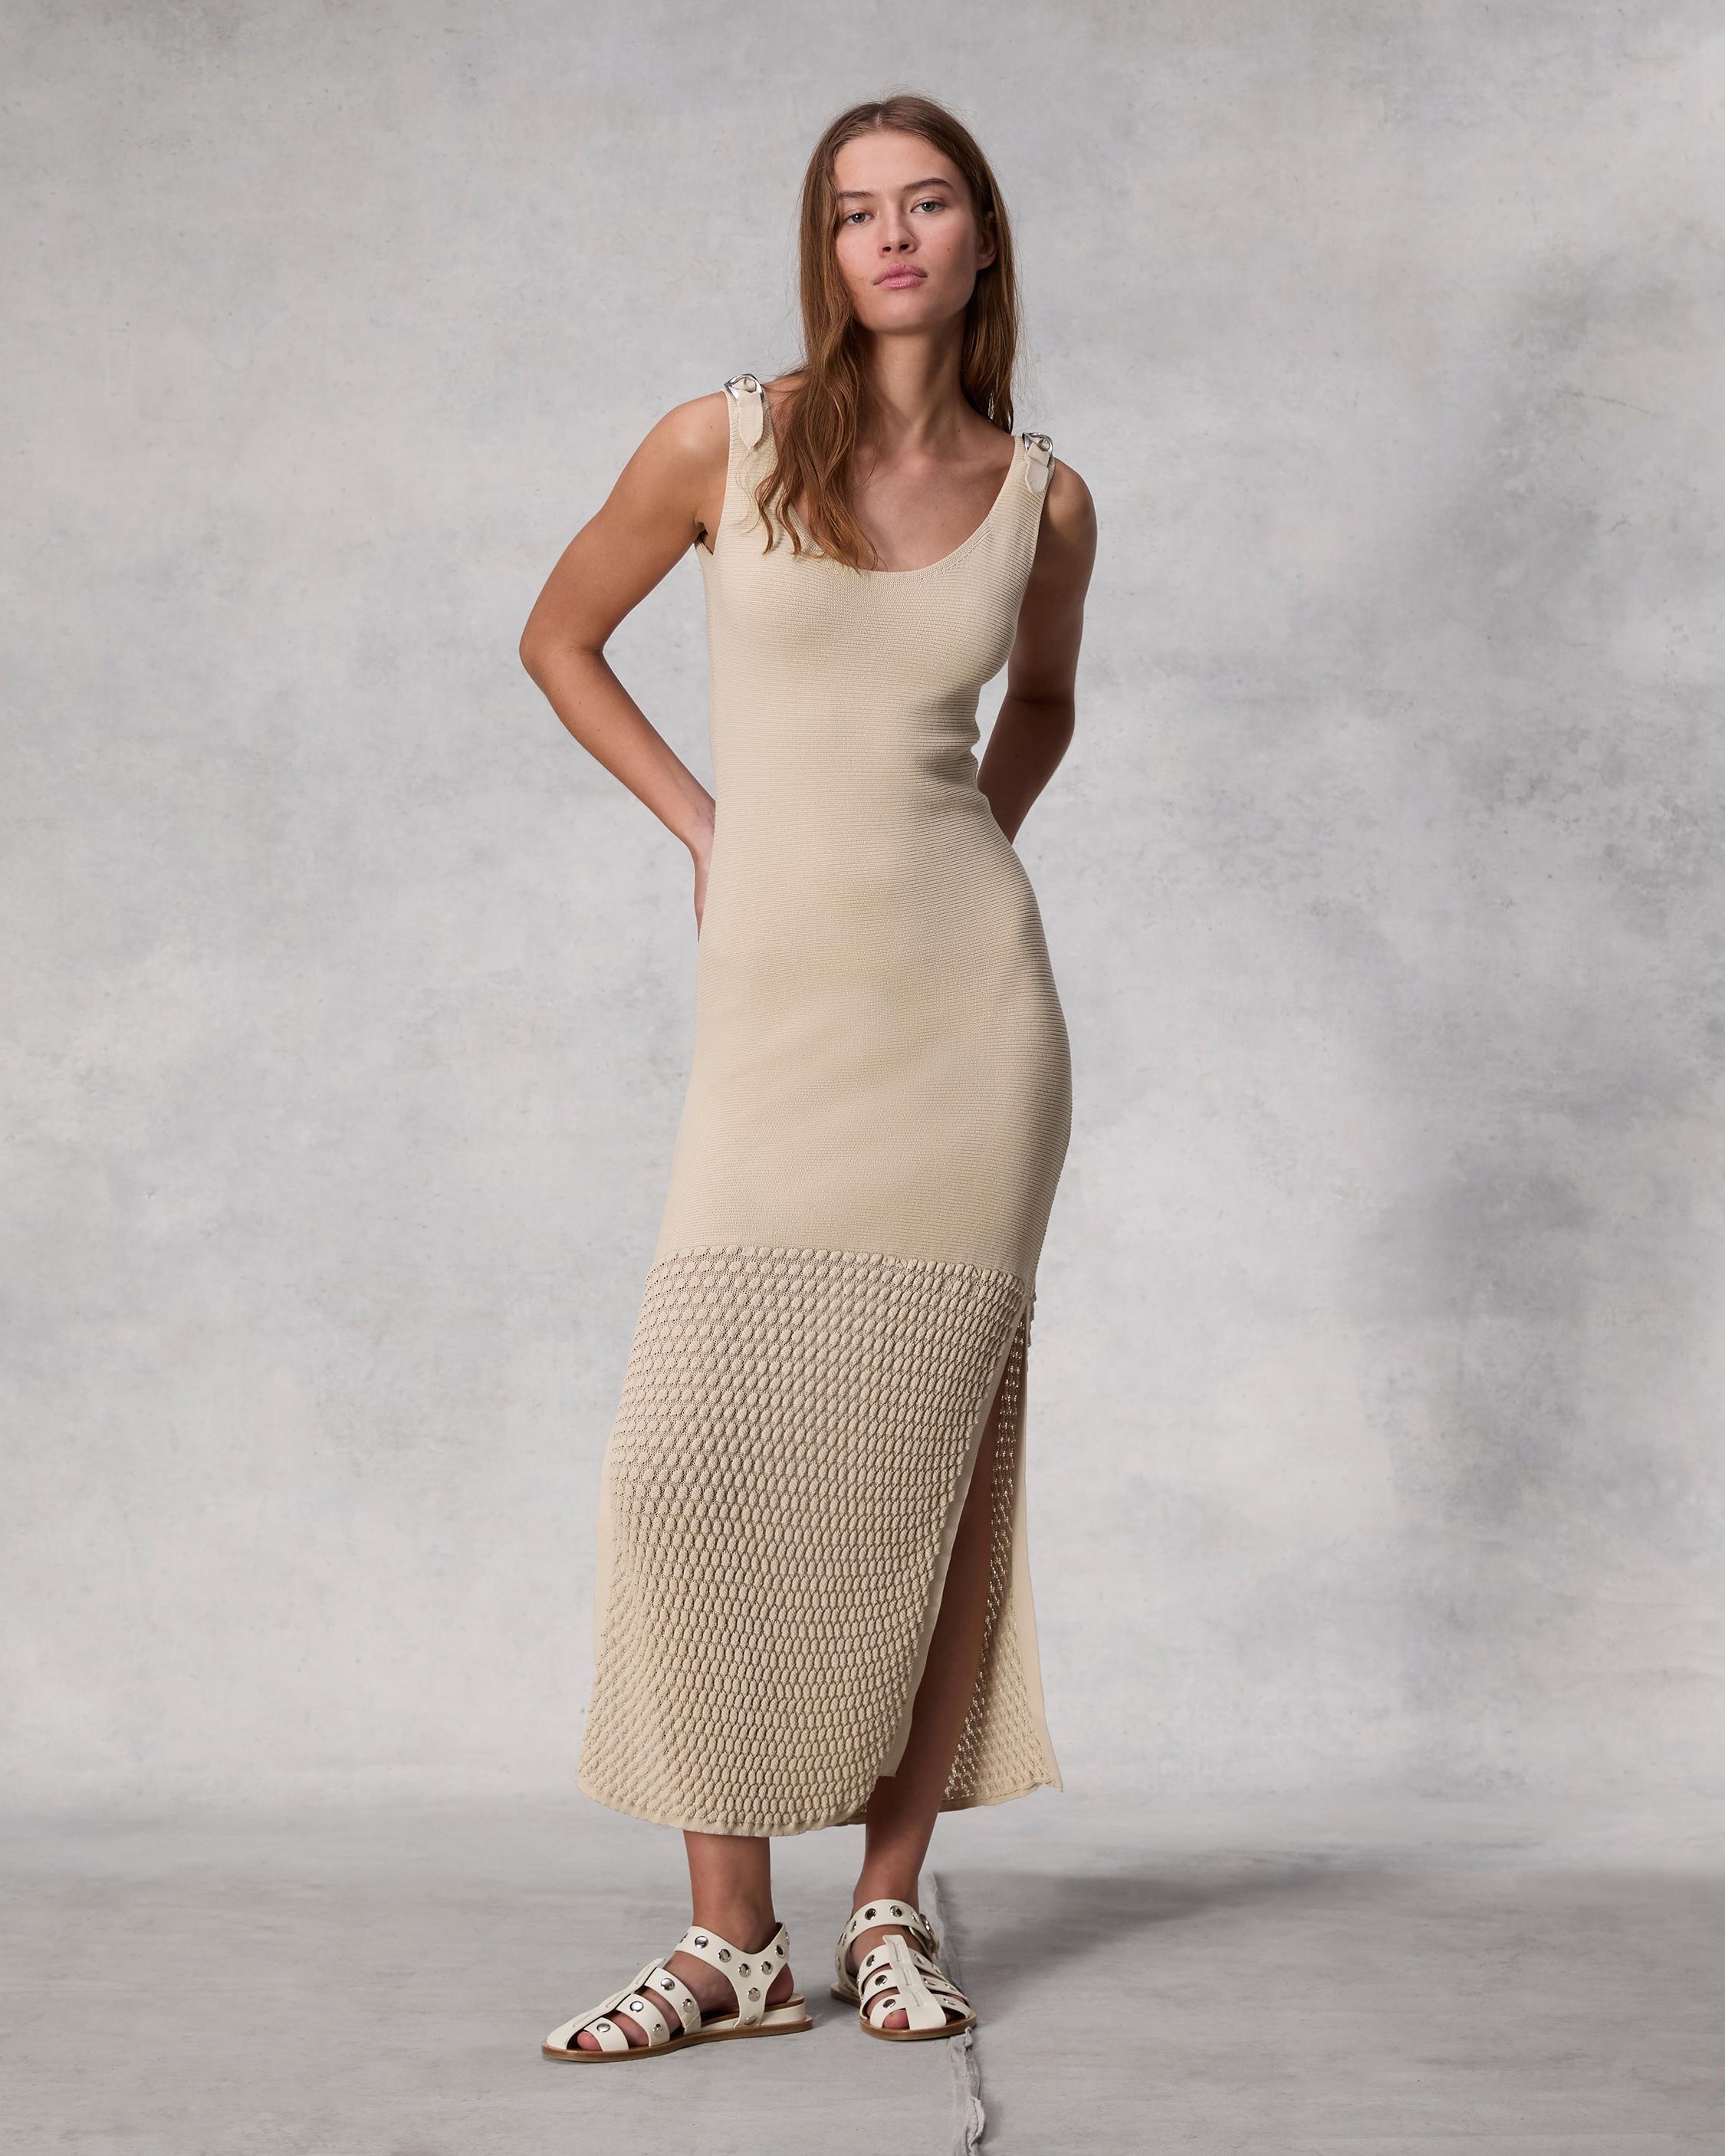 Georgia Cotton Nylon Dress
Midi - 2